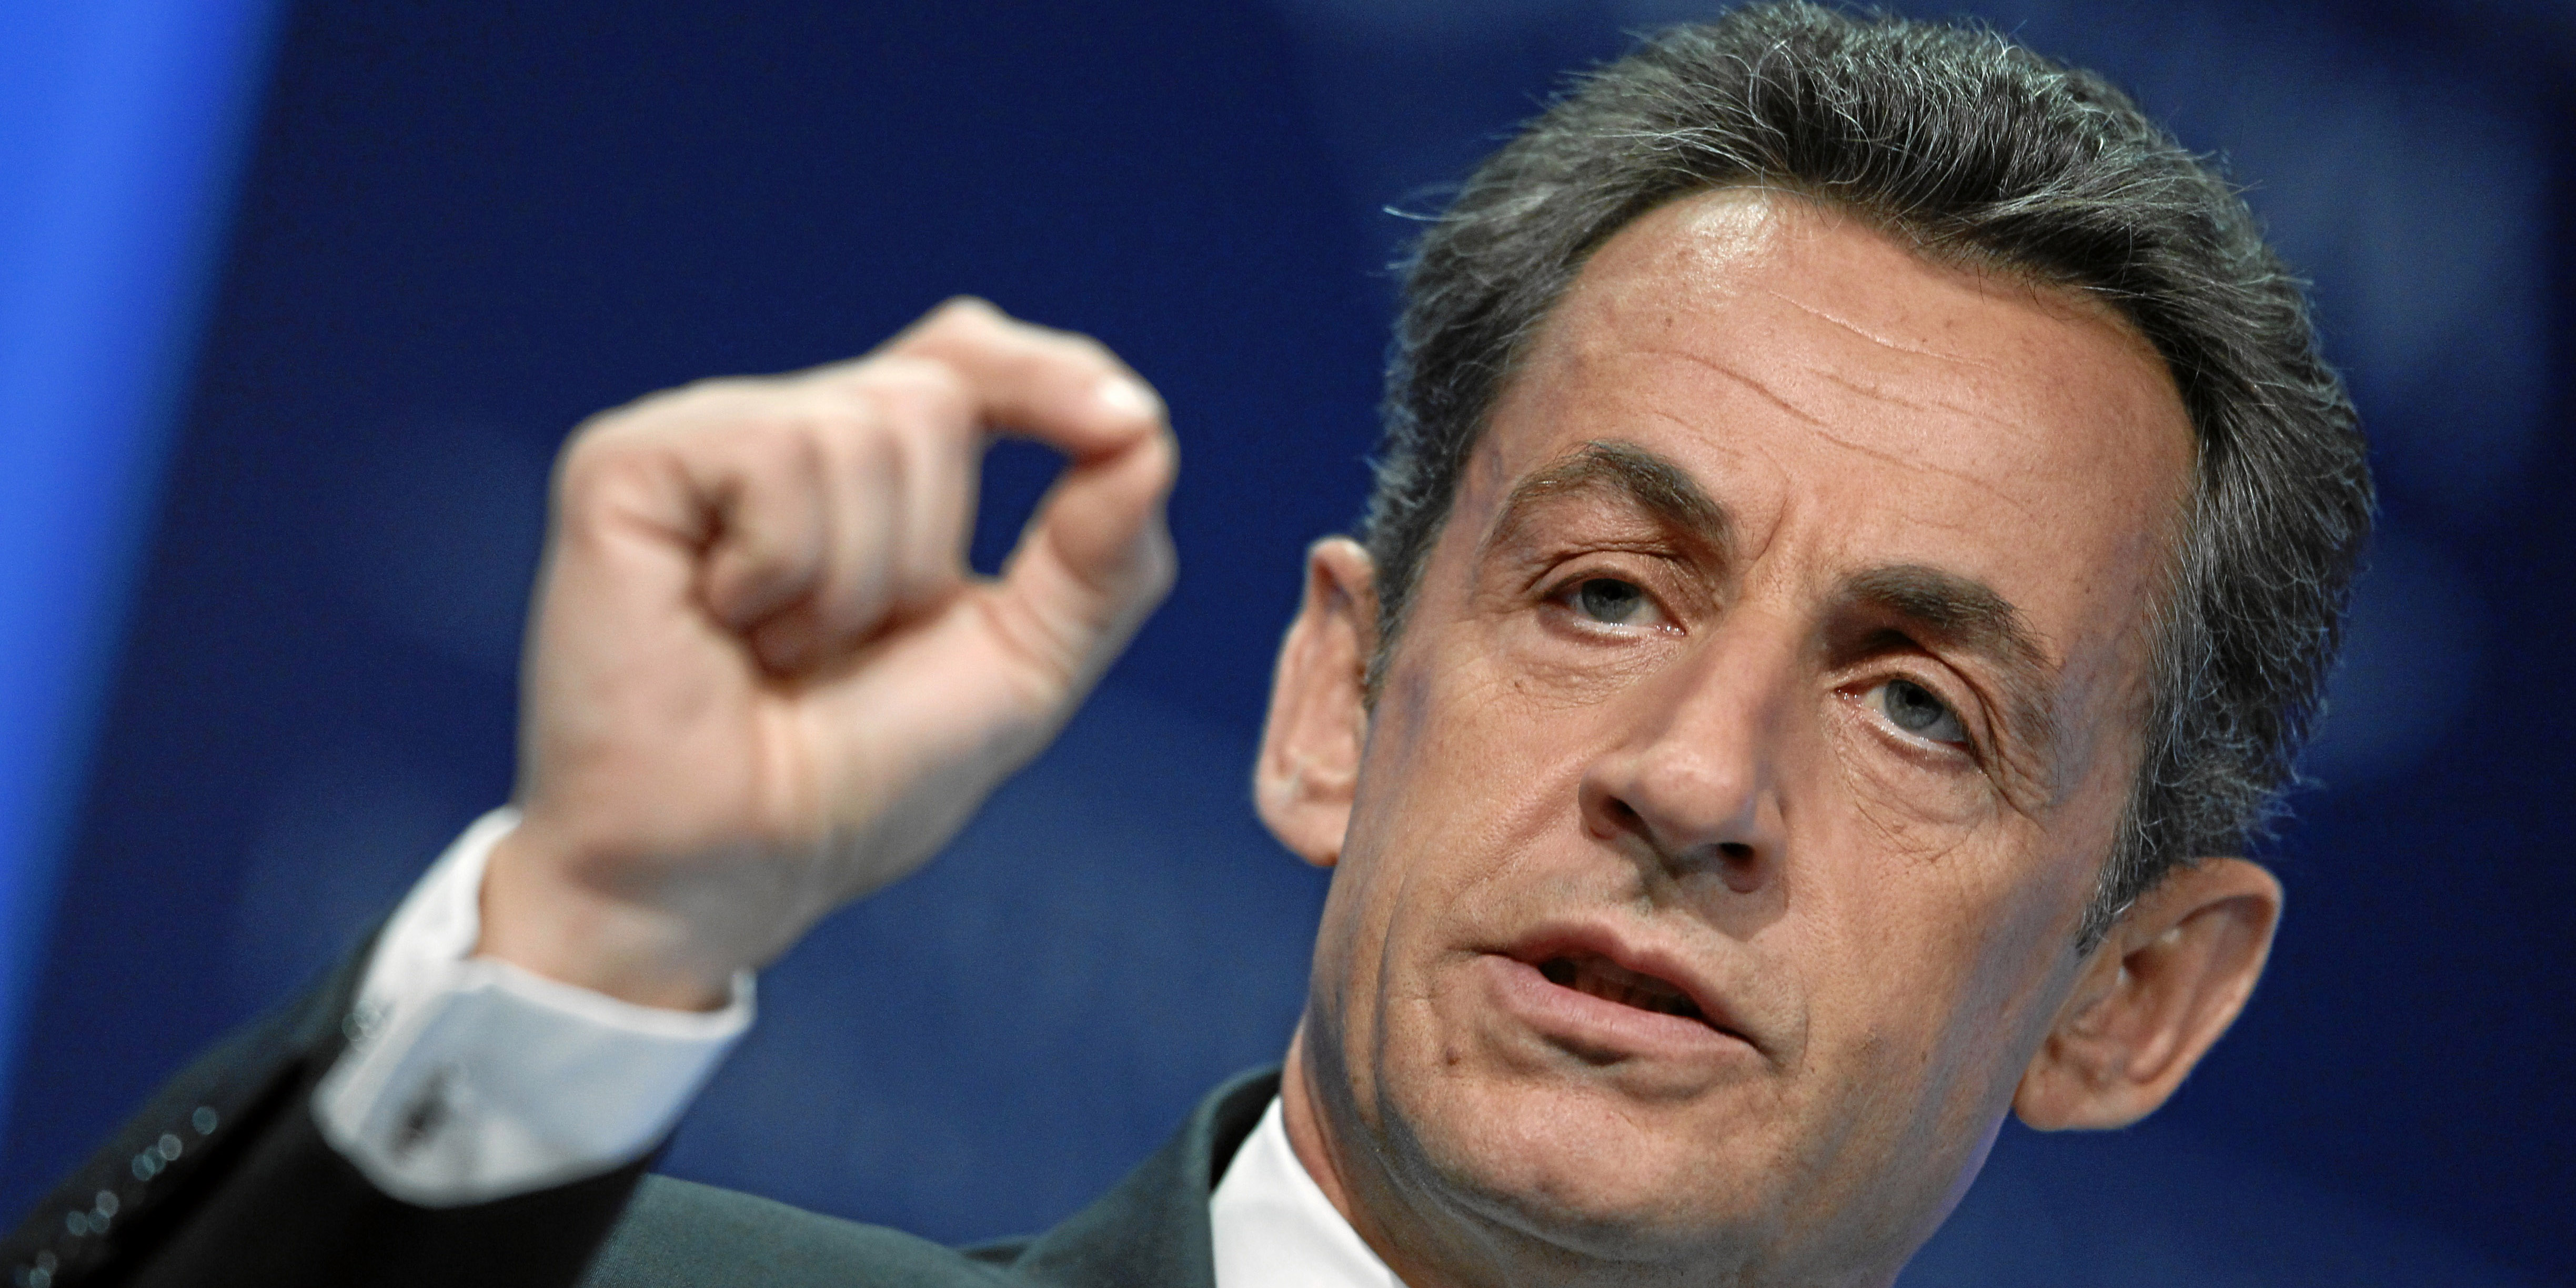 Interdiction du voile dans l’espace public : Nicolas Sarkozy y songe